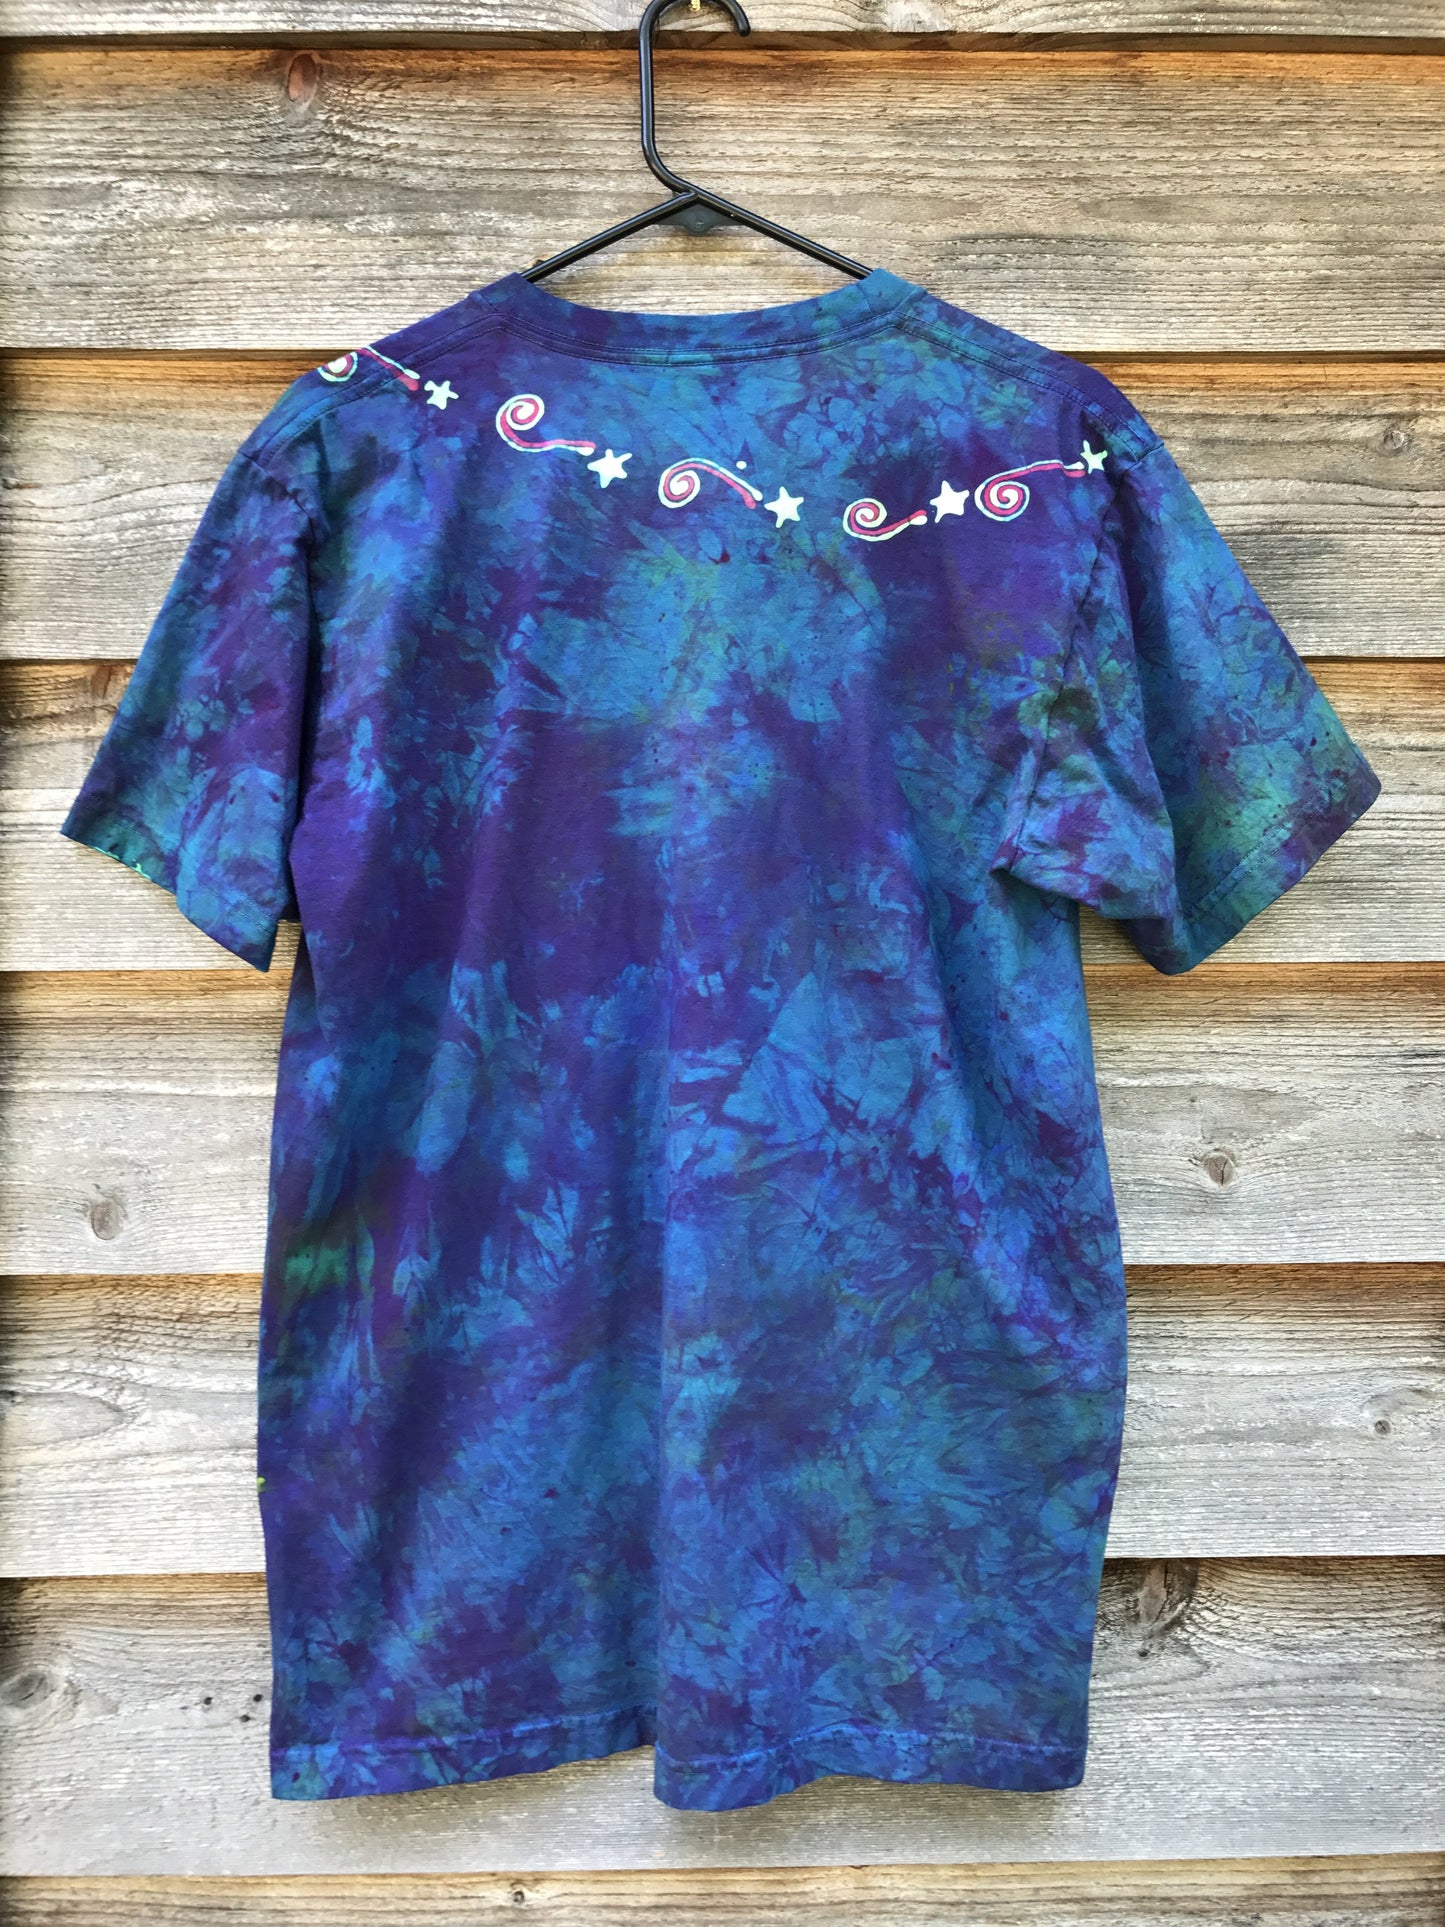 Sunrise Blue Nebula Handmade Batik Tshirt - Size Large